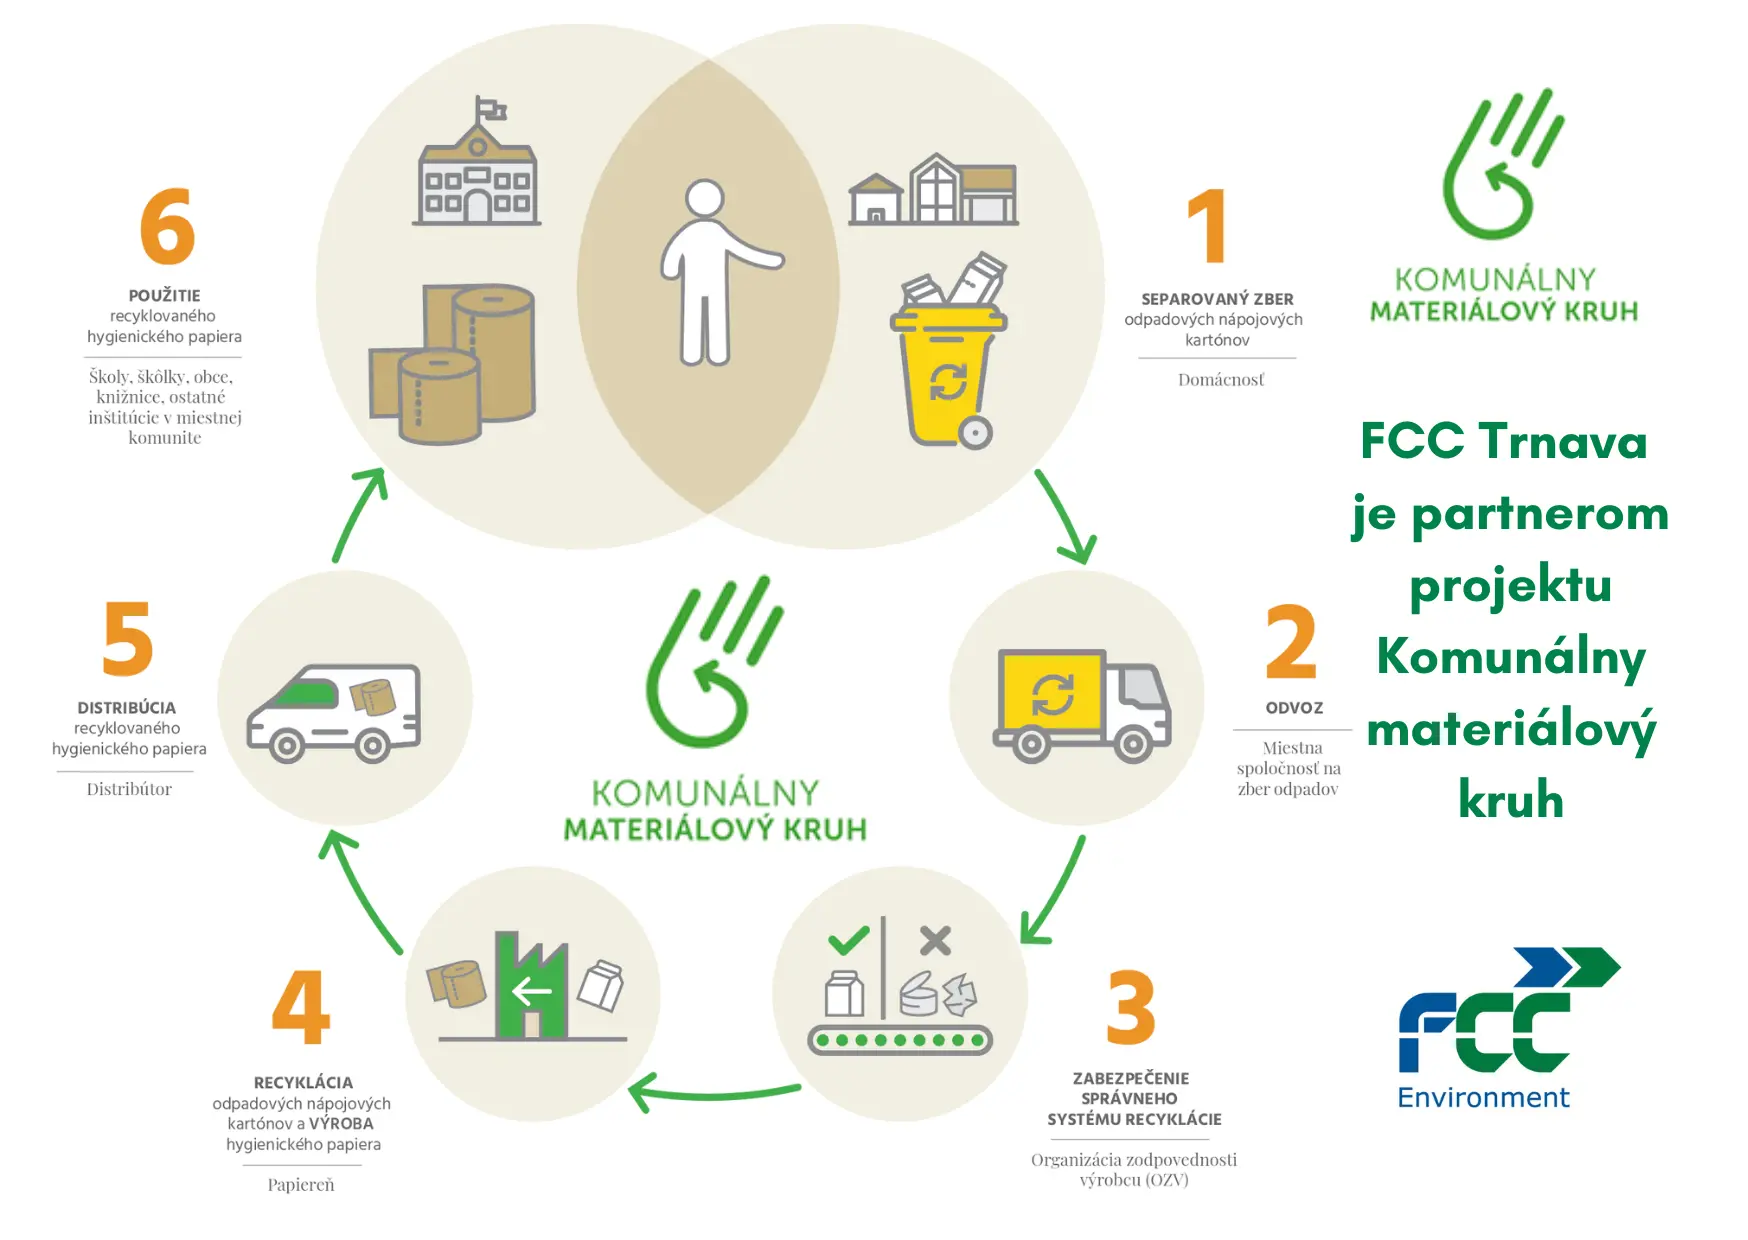 FCC Trnava je partnerom projektu Komunálny materiálový kruh